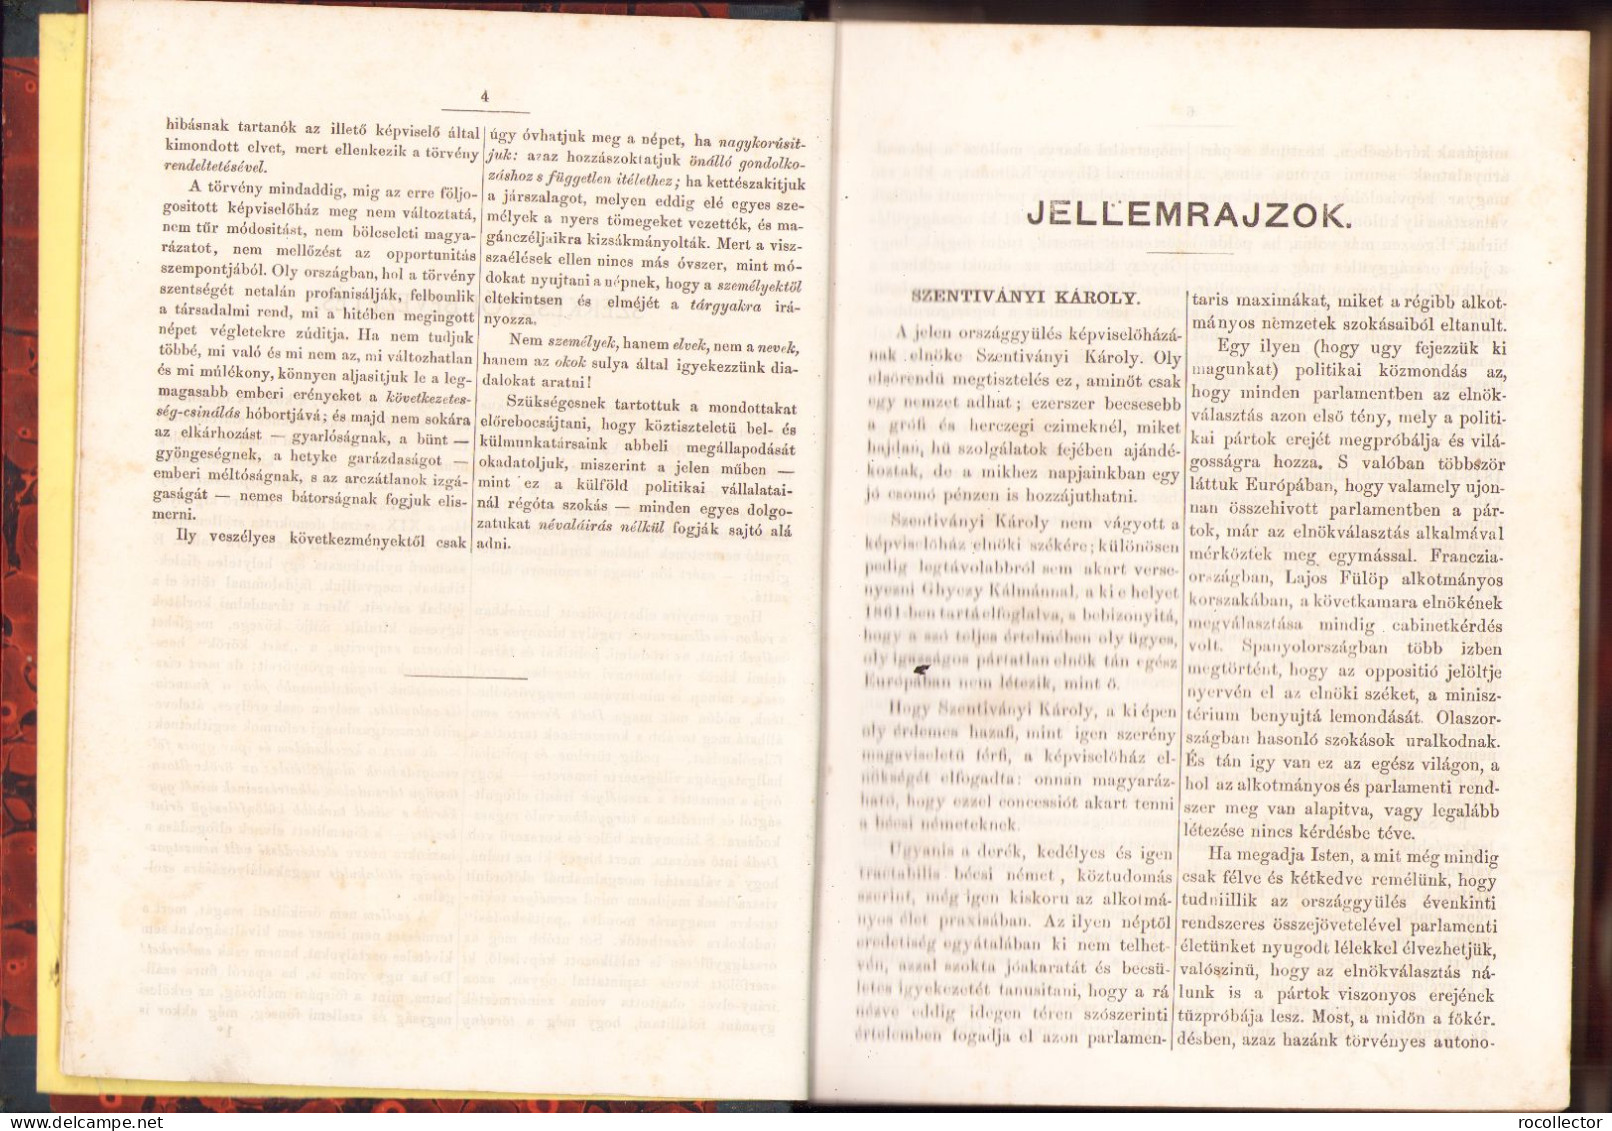 Országgyülési Emlékkönyv 1866, Pest, 1866 543SP - Libros Antiguos Y De Colección